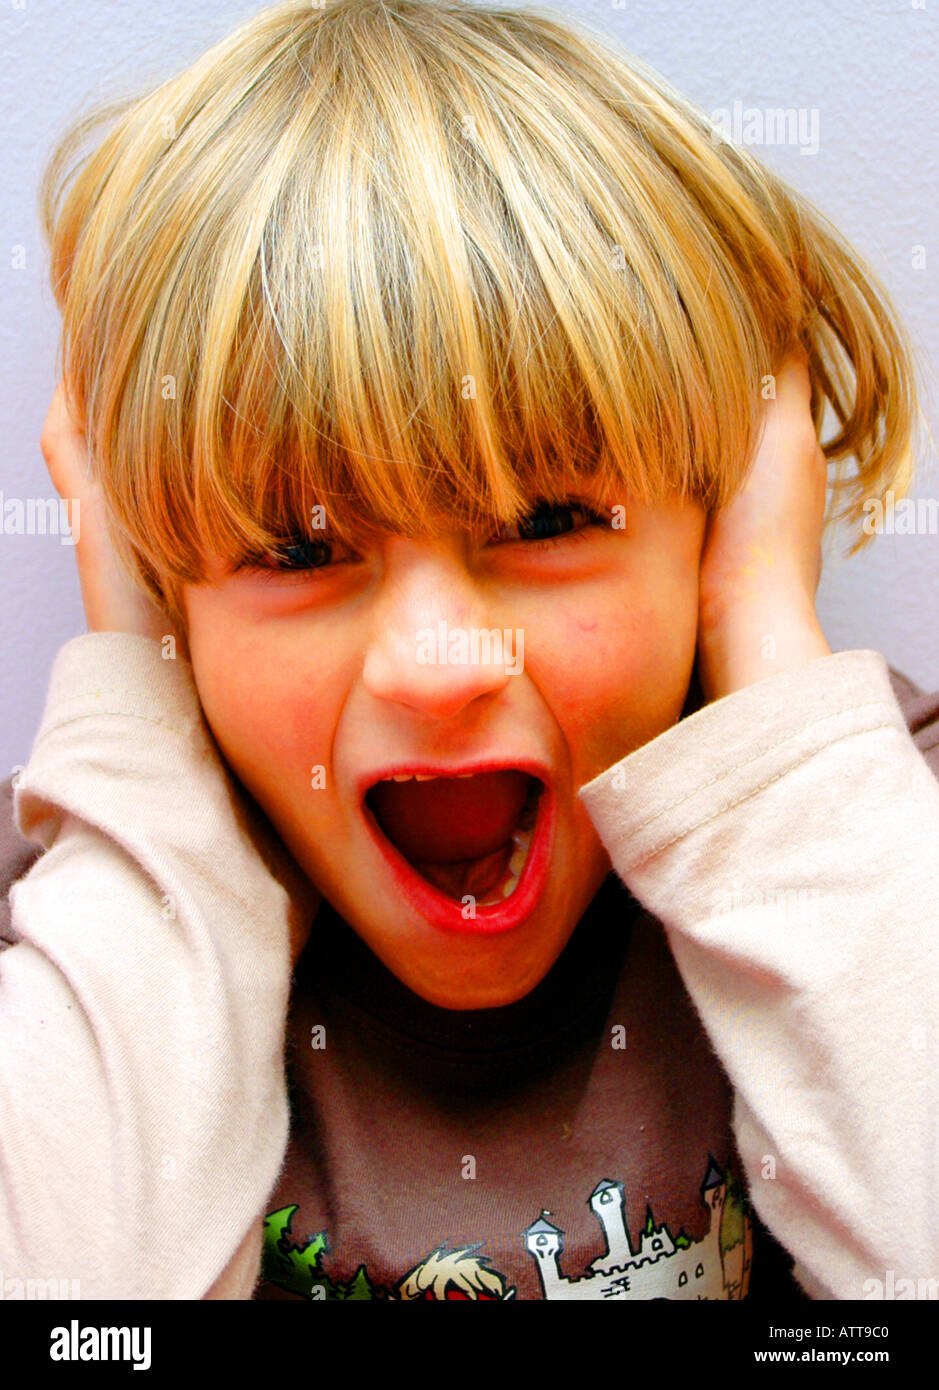 MR Schreiender Junge hält sich die Ohren zu MR Screaming boy keeps shut the ears Bildagentur online Begsteiger Stock Photo